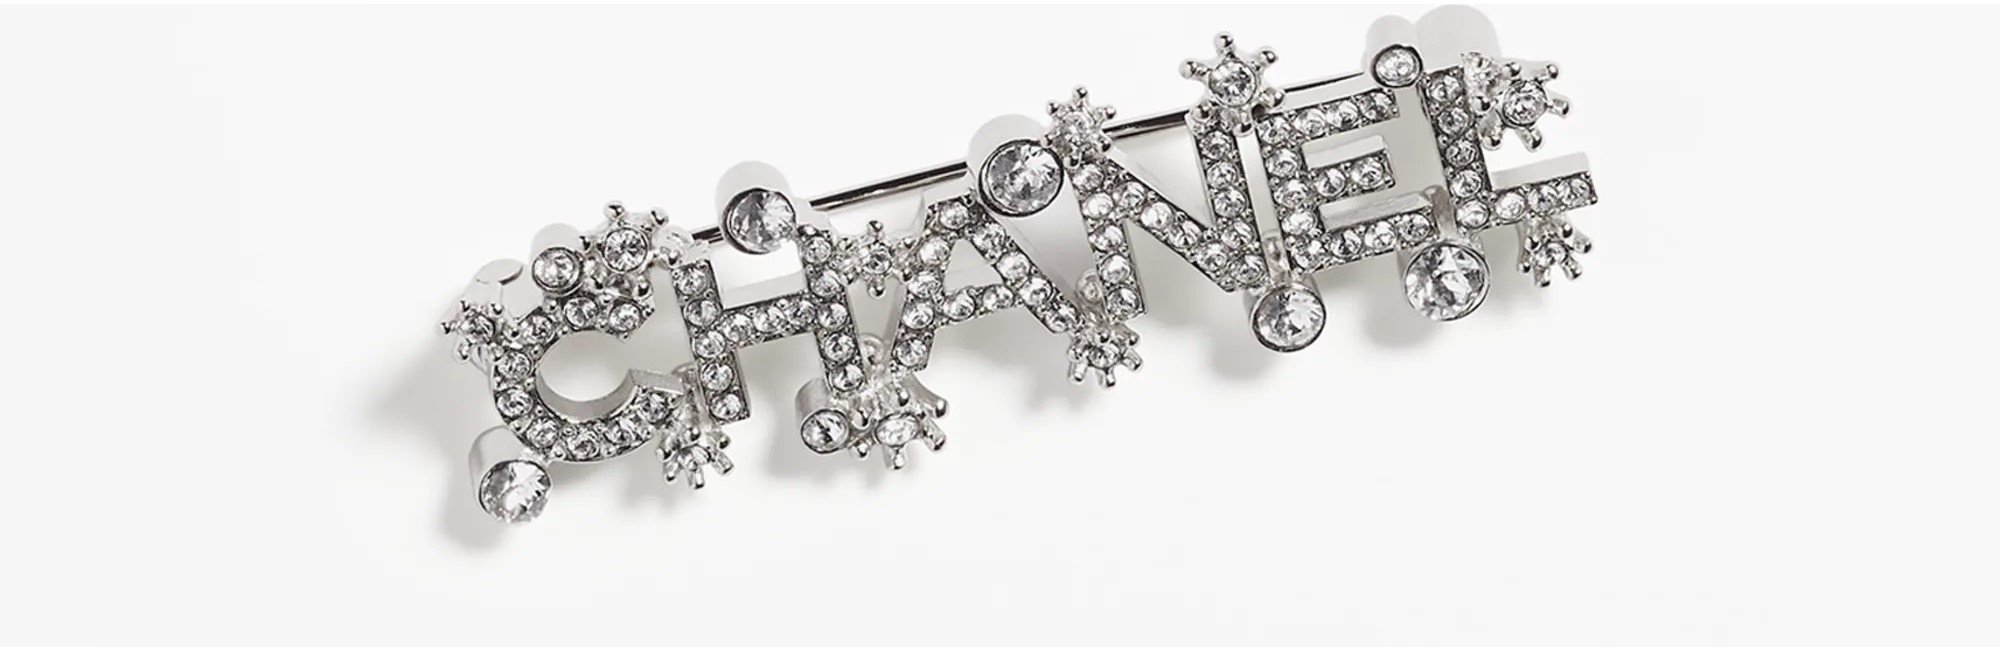 Chanel Logo Diamantés Metal Brooch in Silver & Crystal — UFO No More